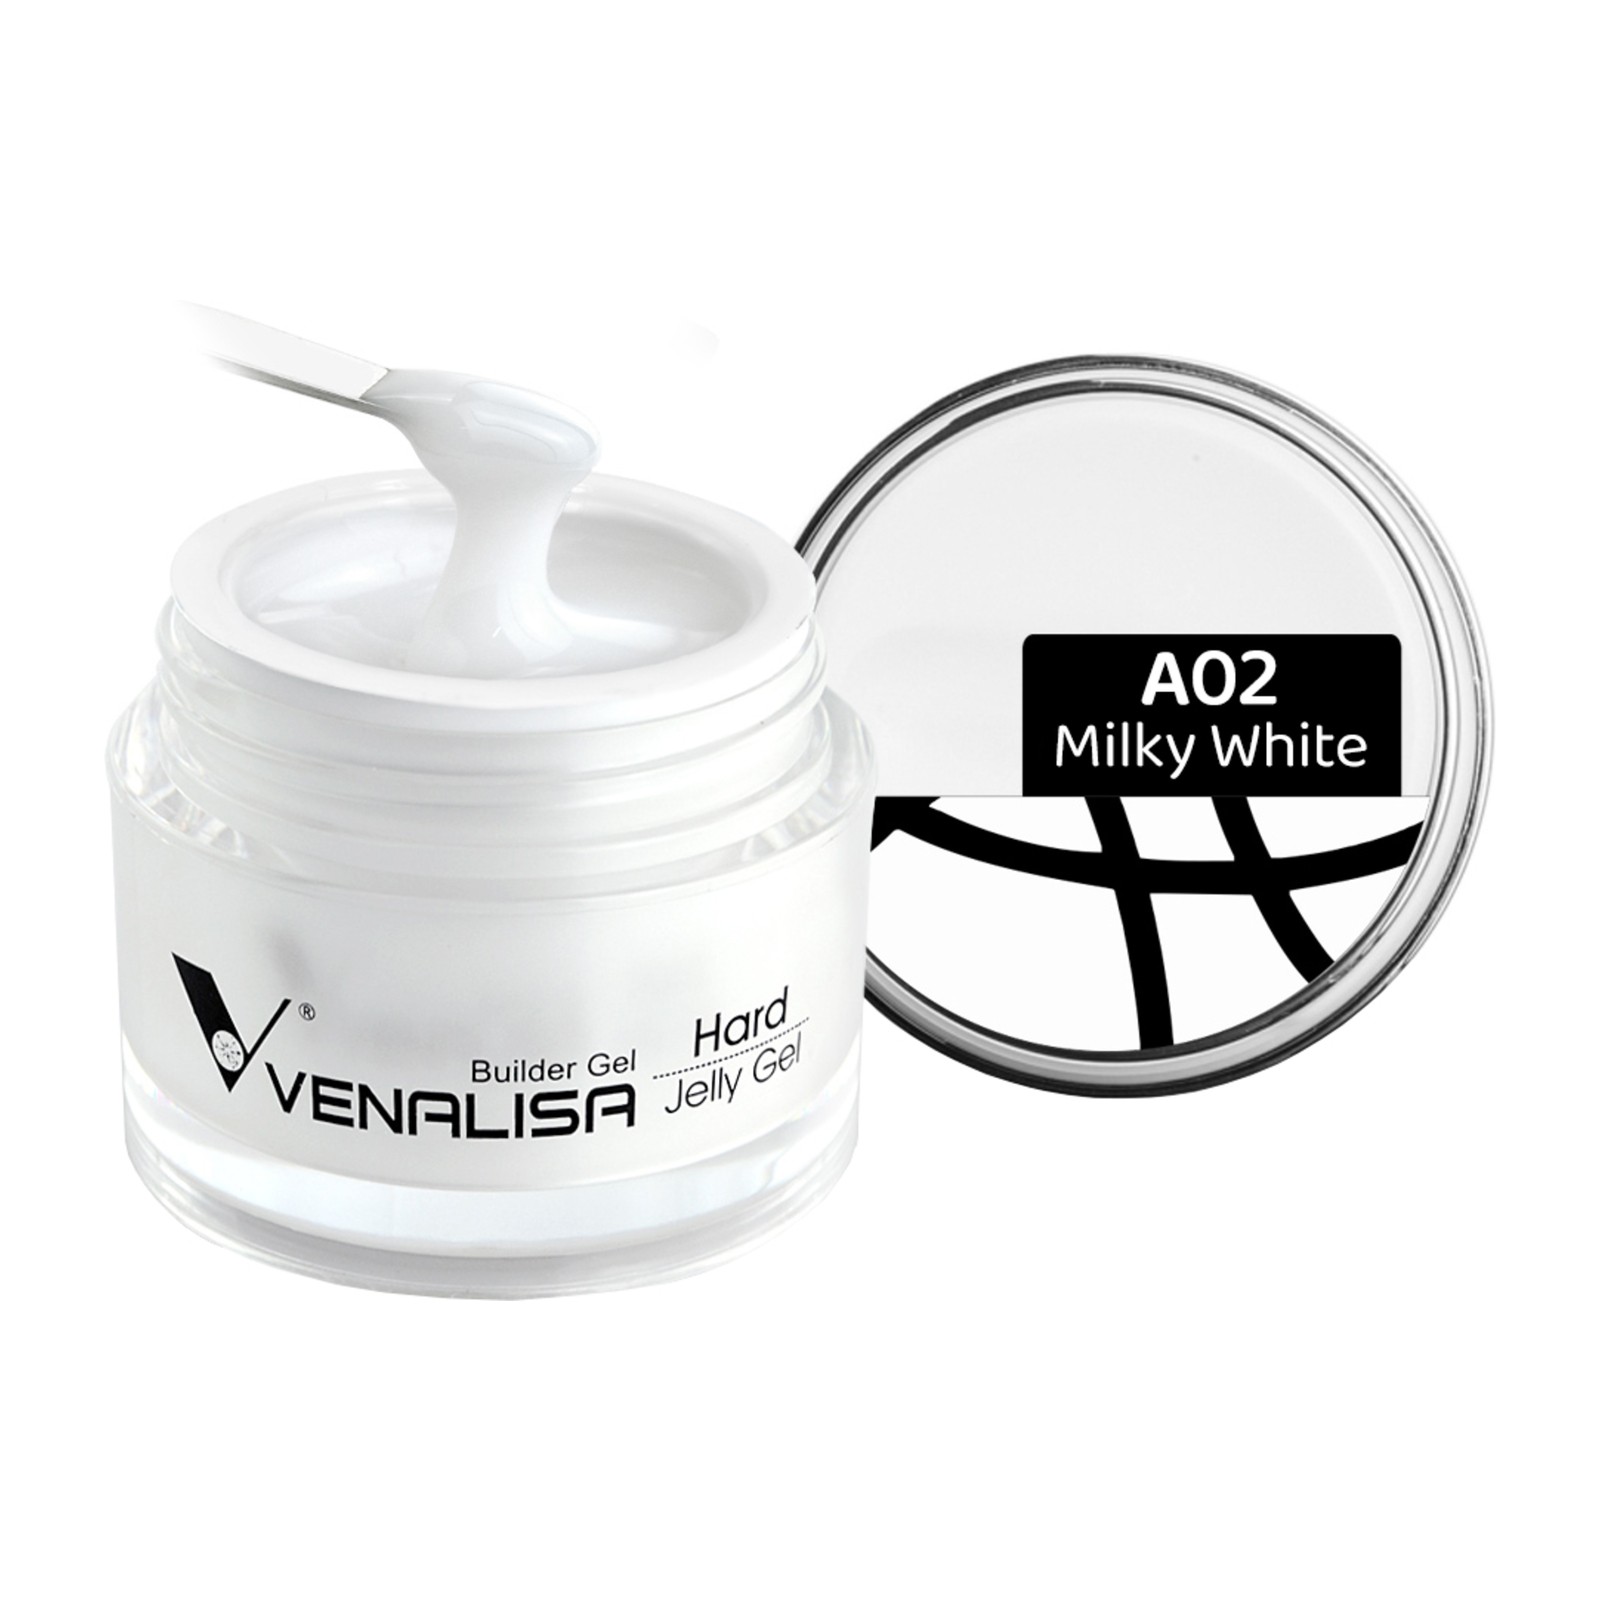 Venalisa -  A02 Piena balts -  50 ml